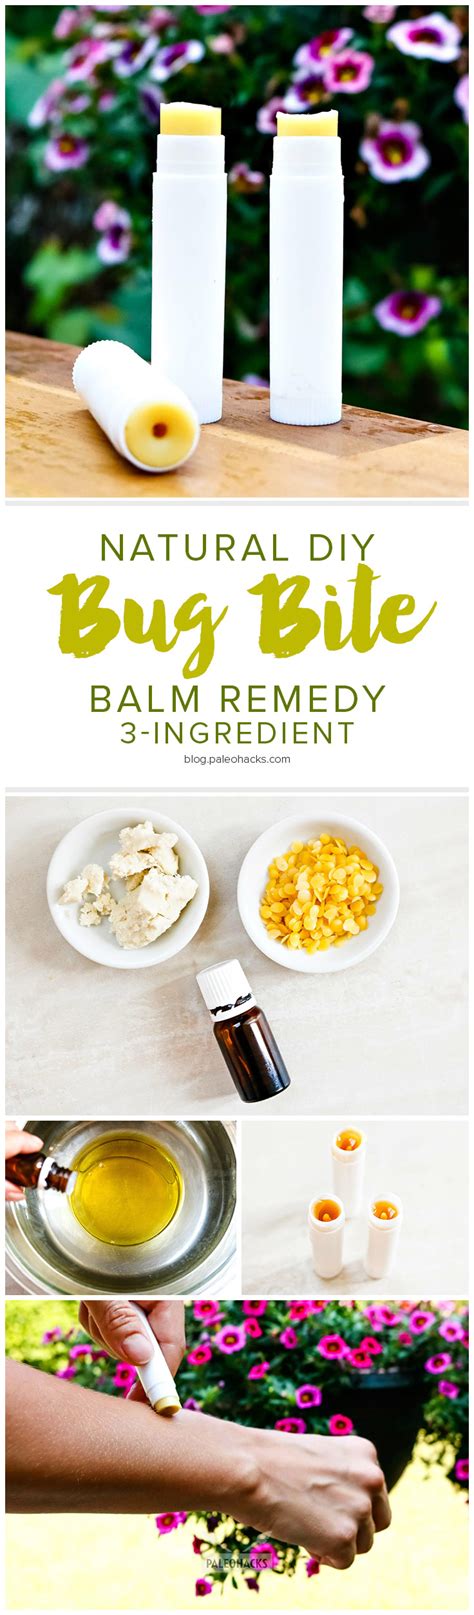 Natural Diy Bug Bite Balm Remedy 3 Ingredient Paleohacks Blog